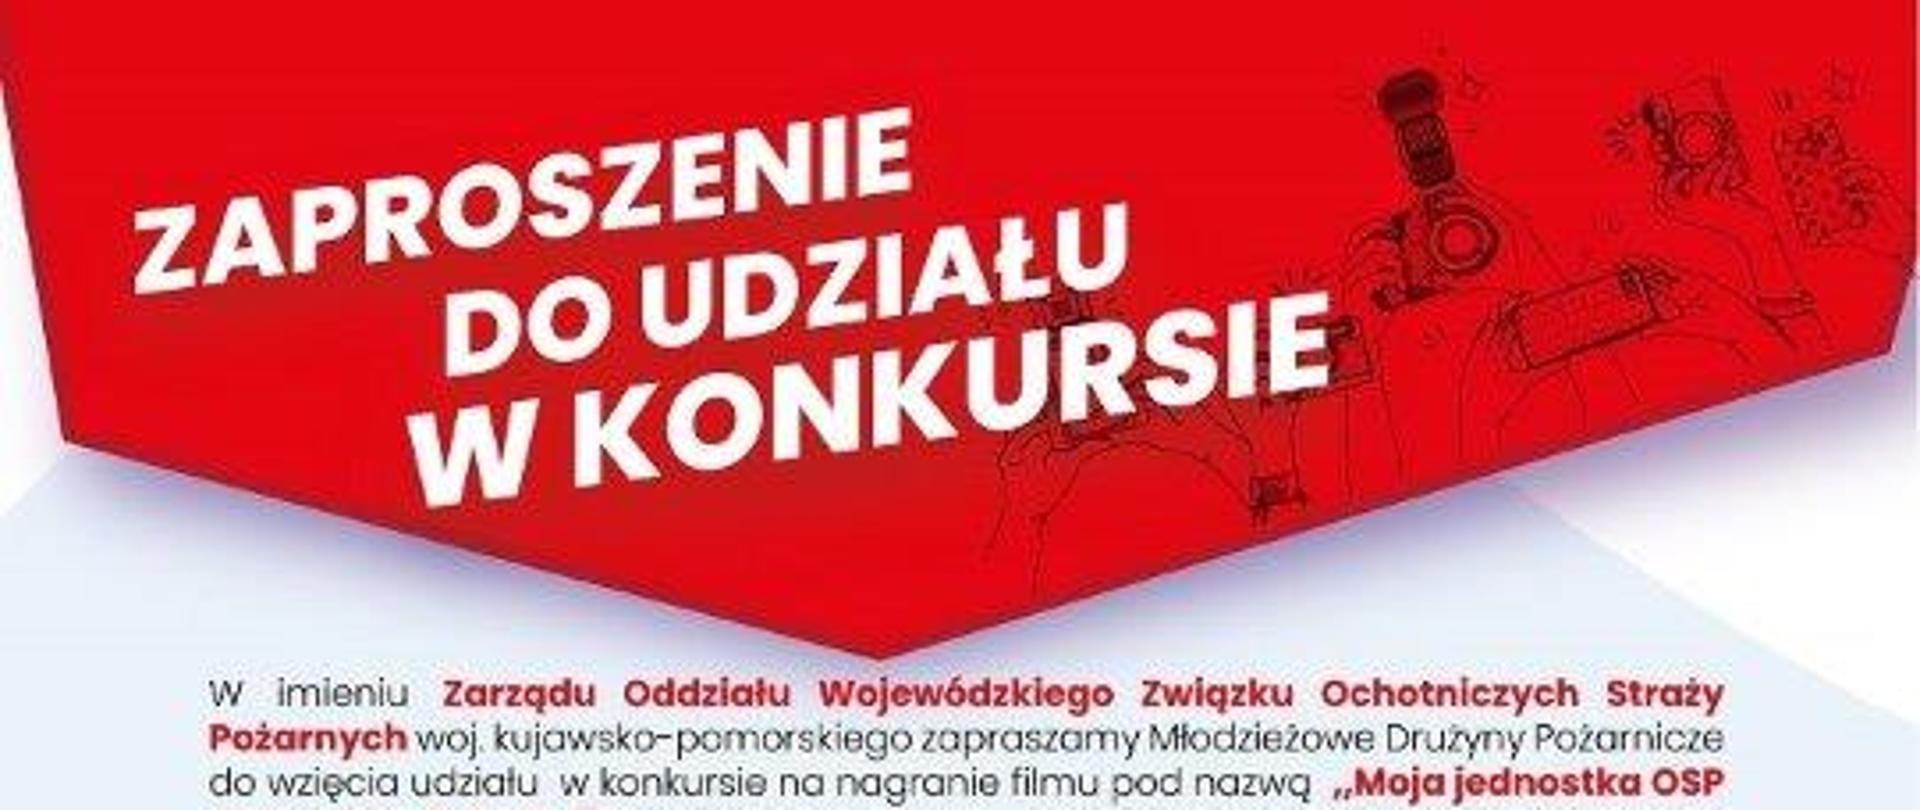 na zdjęciu przedstawiony jest plakat informujący o konkursie dla Młodzieżowych Drużyn Pożarniczych z terenu województwa kujawsko-pomorskiego